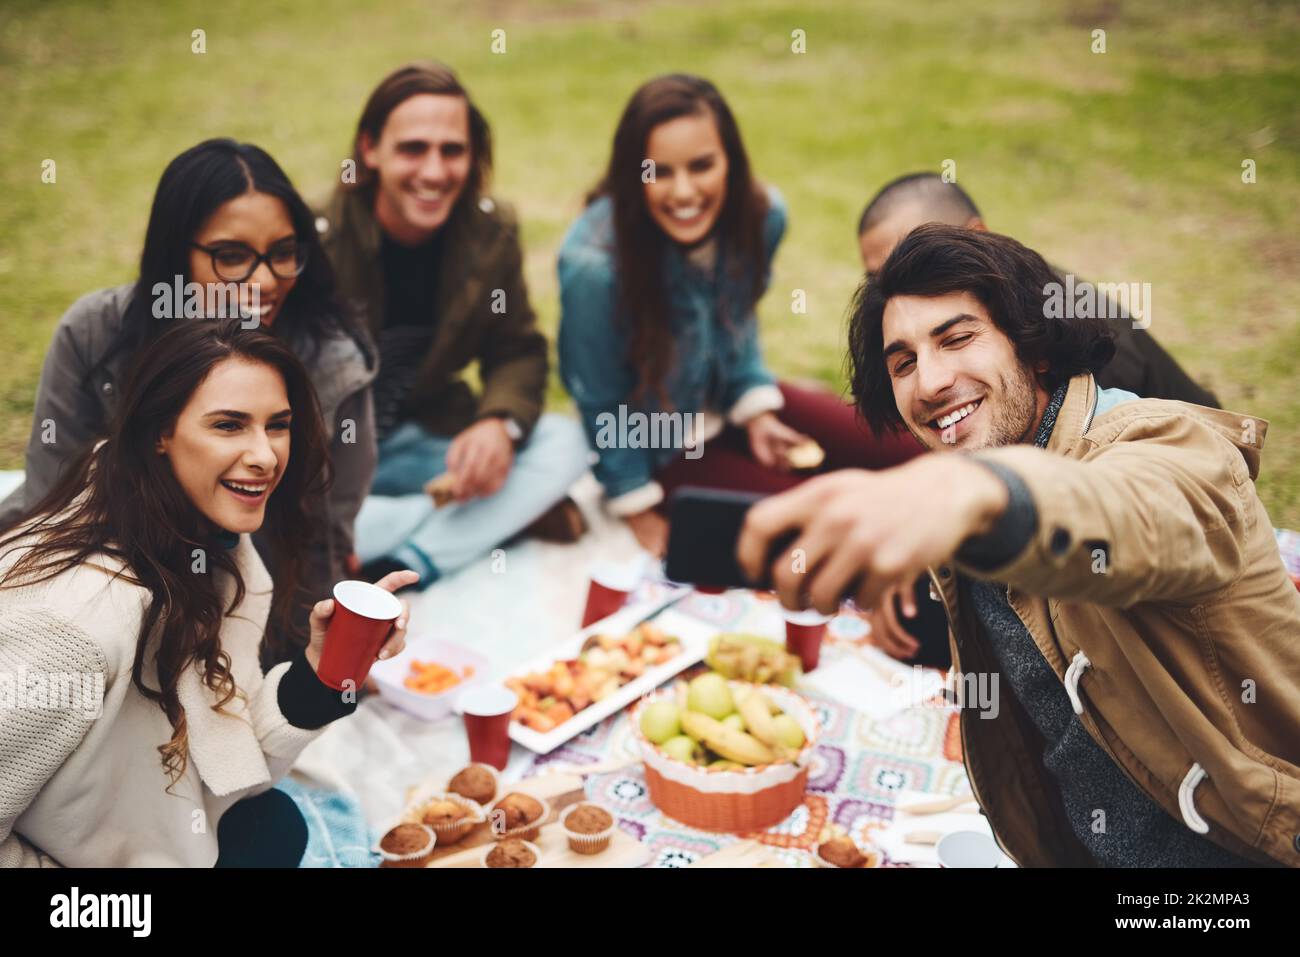 Tutti si fanno per la foto. Foto di un gruppo di giovani amici che prendono un autoritratto insieme mentre si tiene un picnic all'aperto durante il giorno. Foto Stock